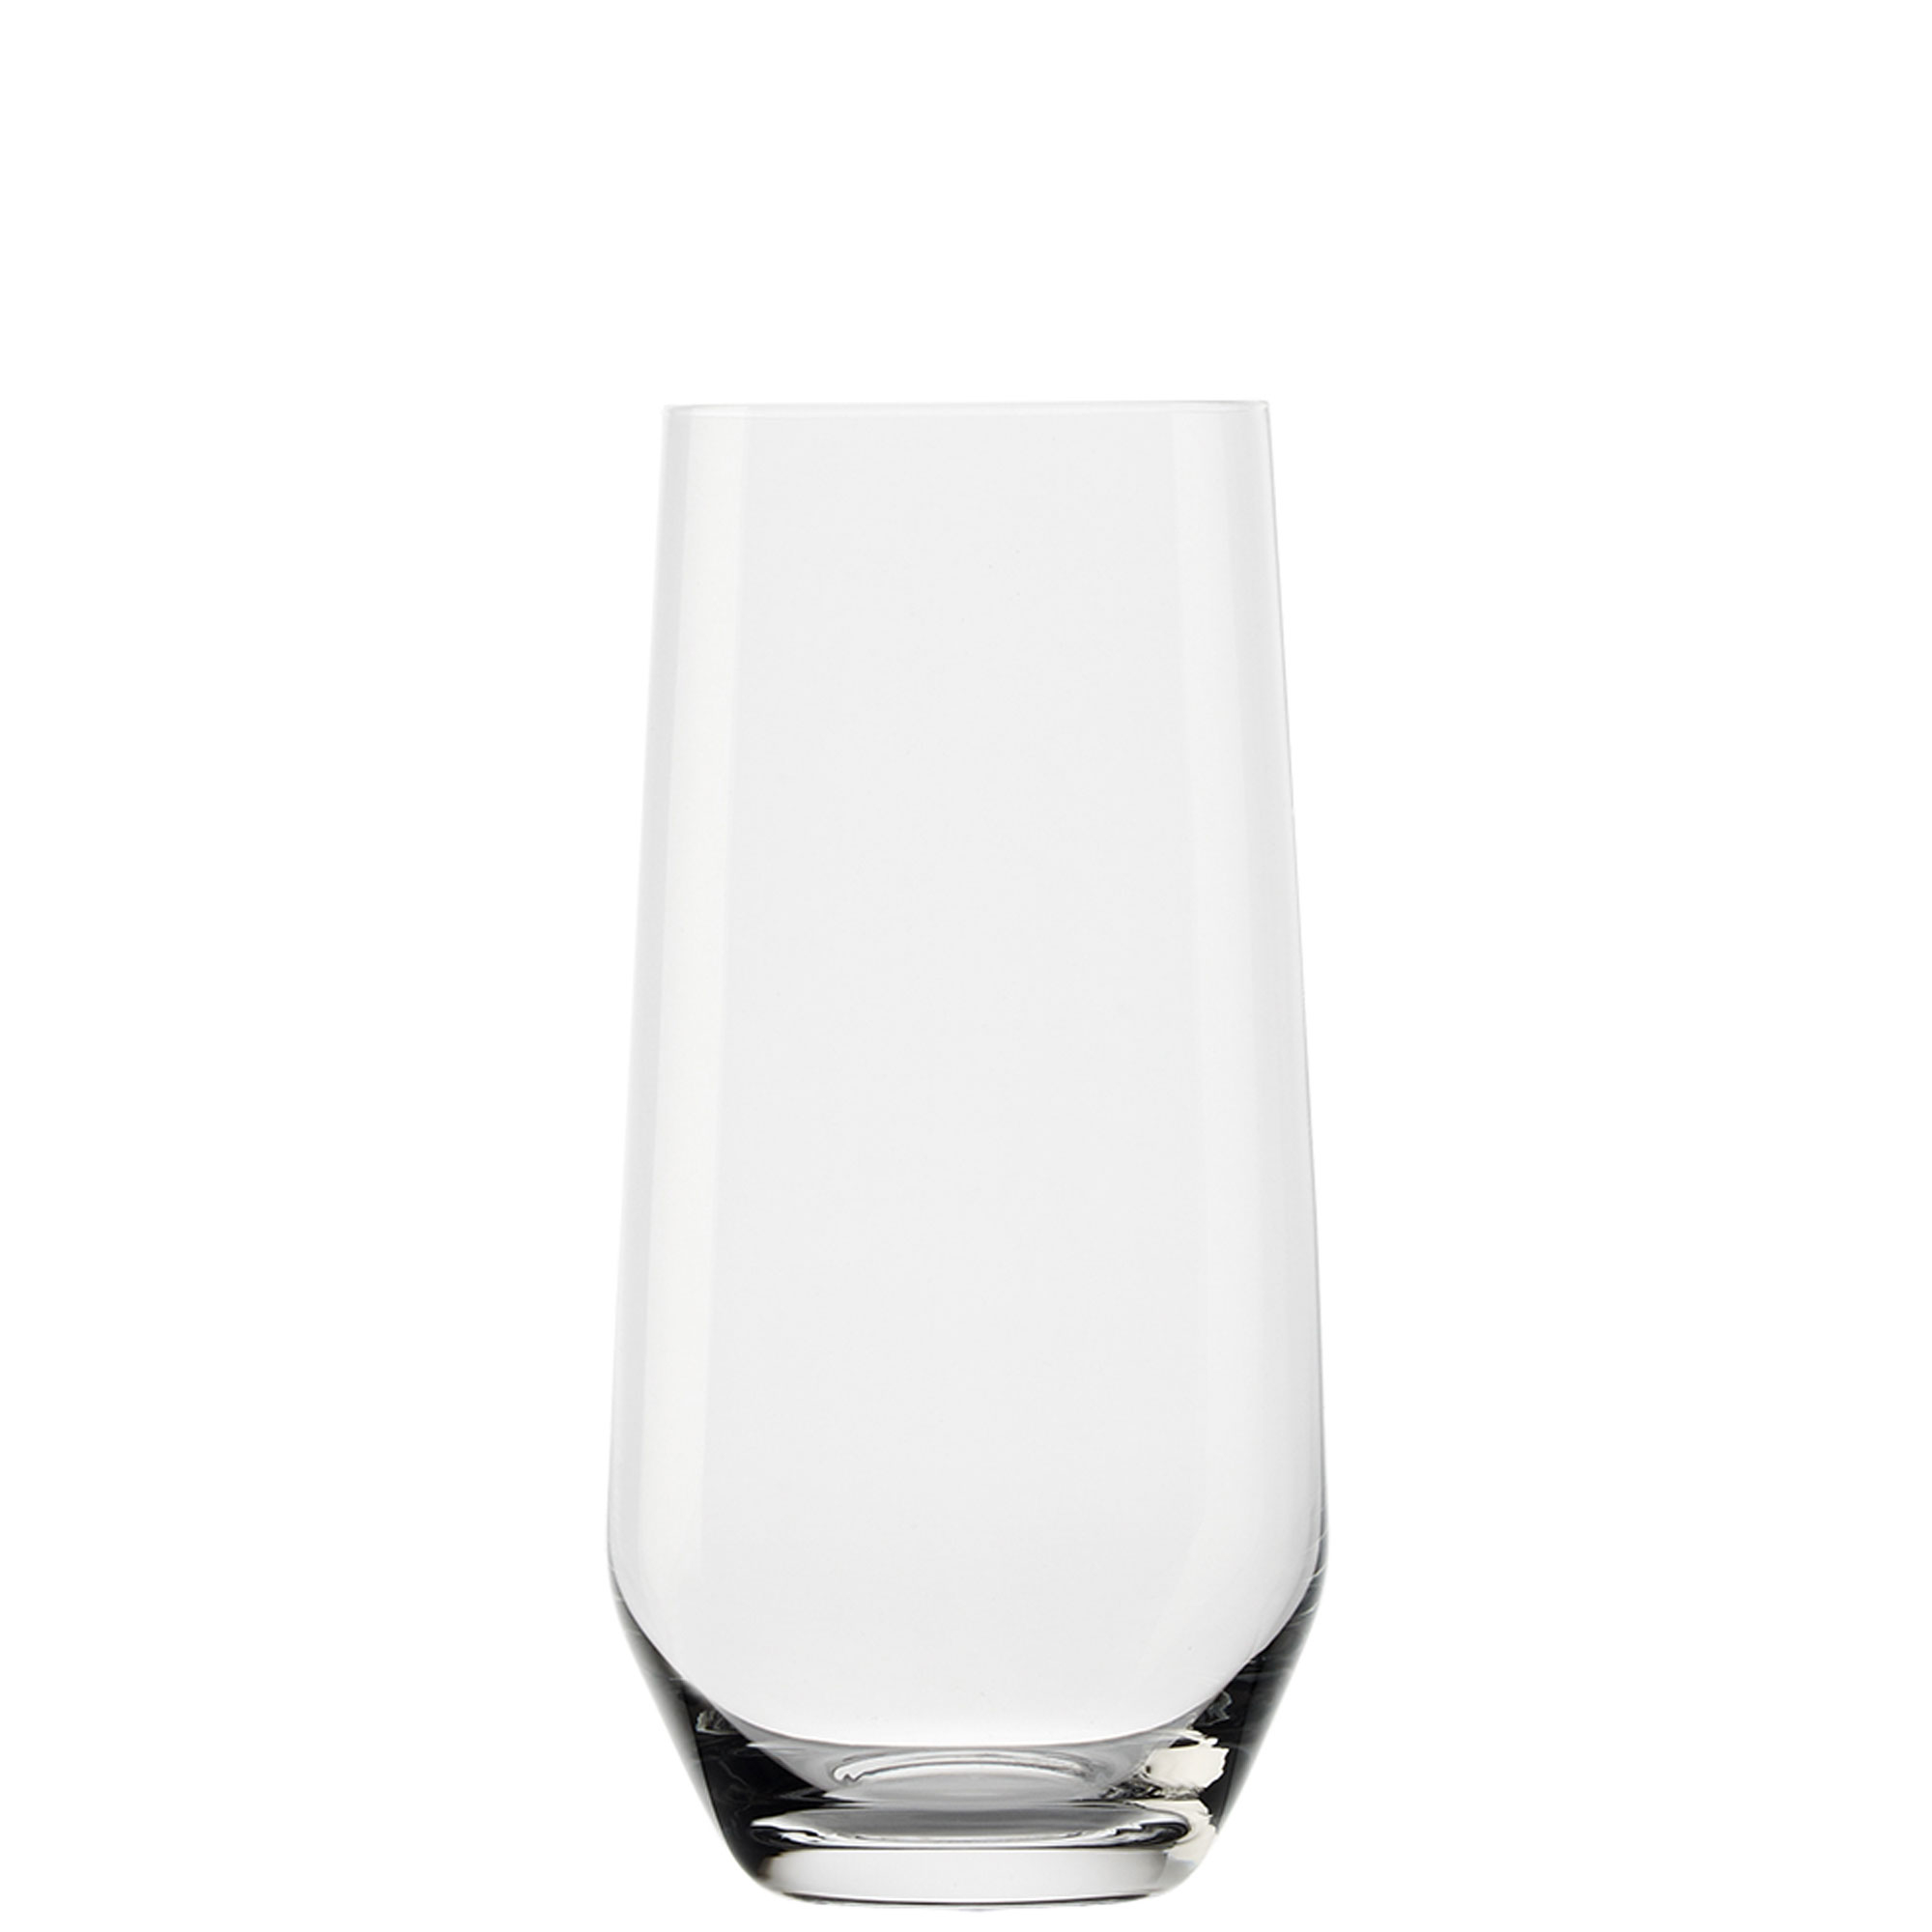 Long drink glass Quatrophil, Stölzle - 390ml (1 pc.)